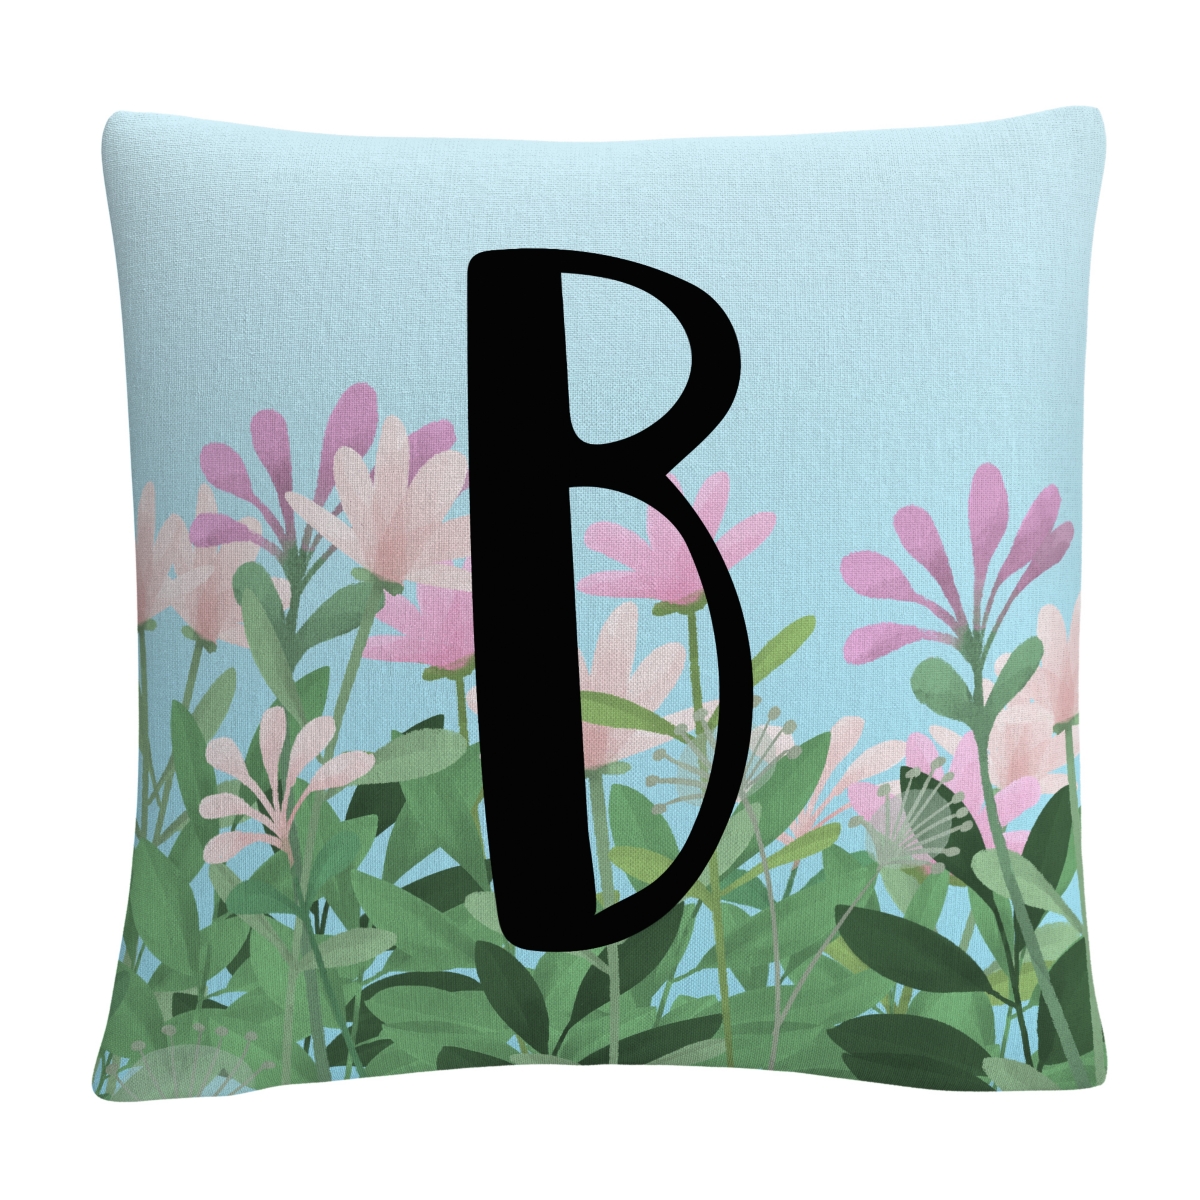 Abc Pink Floral Garden Letter Illustration Decorative Pillow, 16 x 16